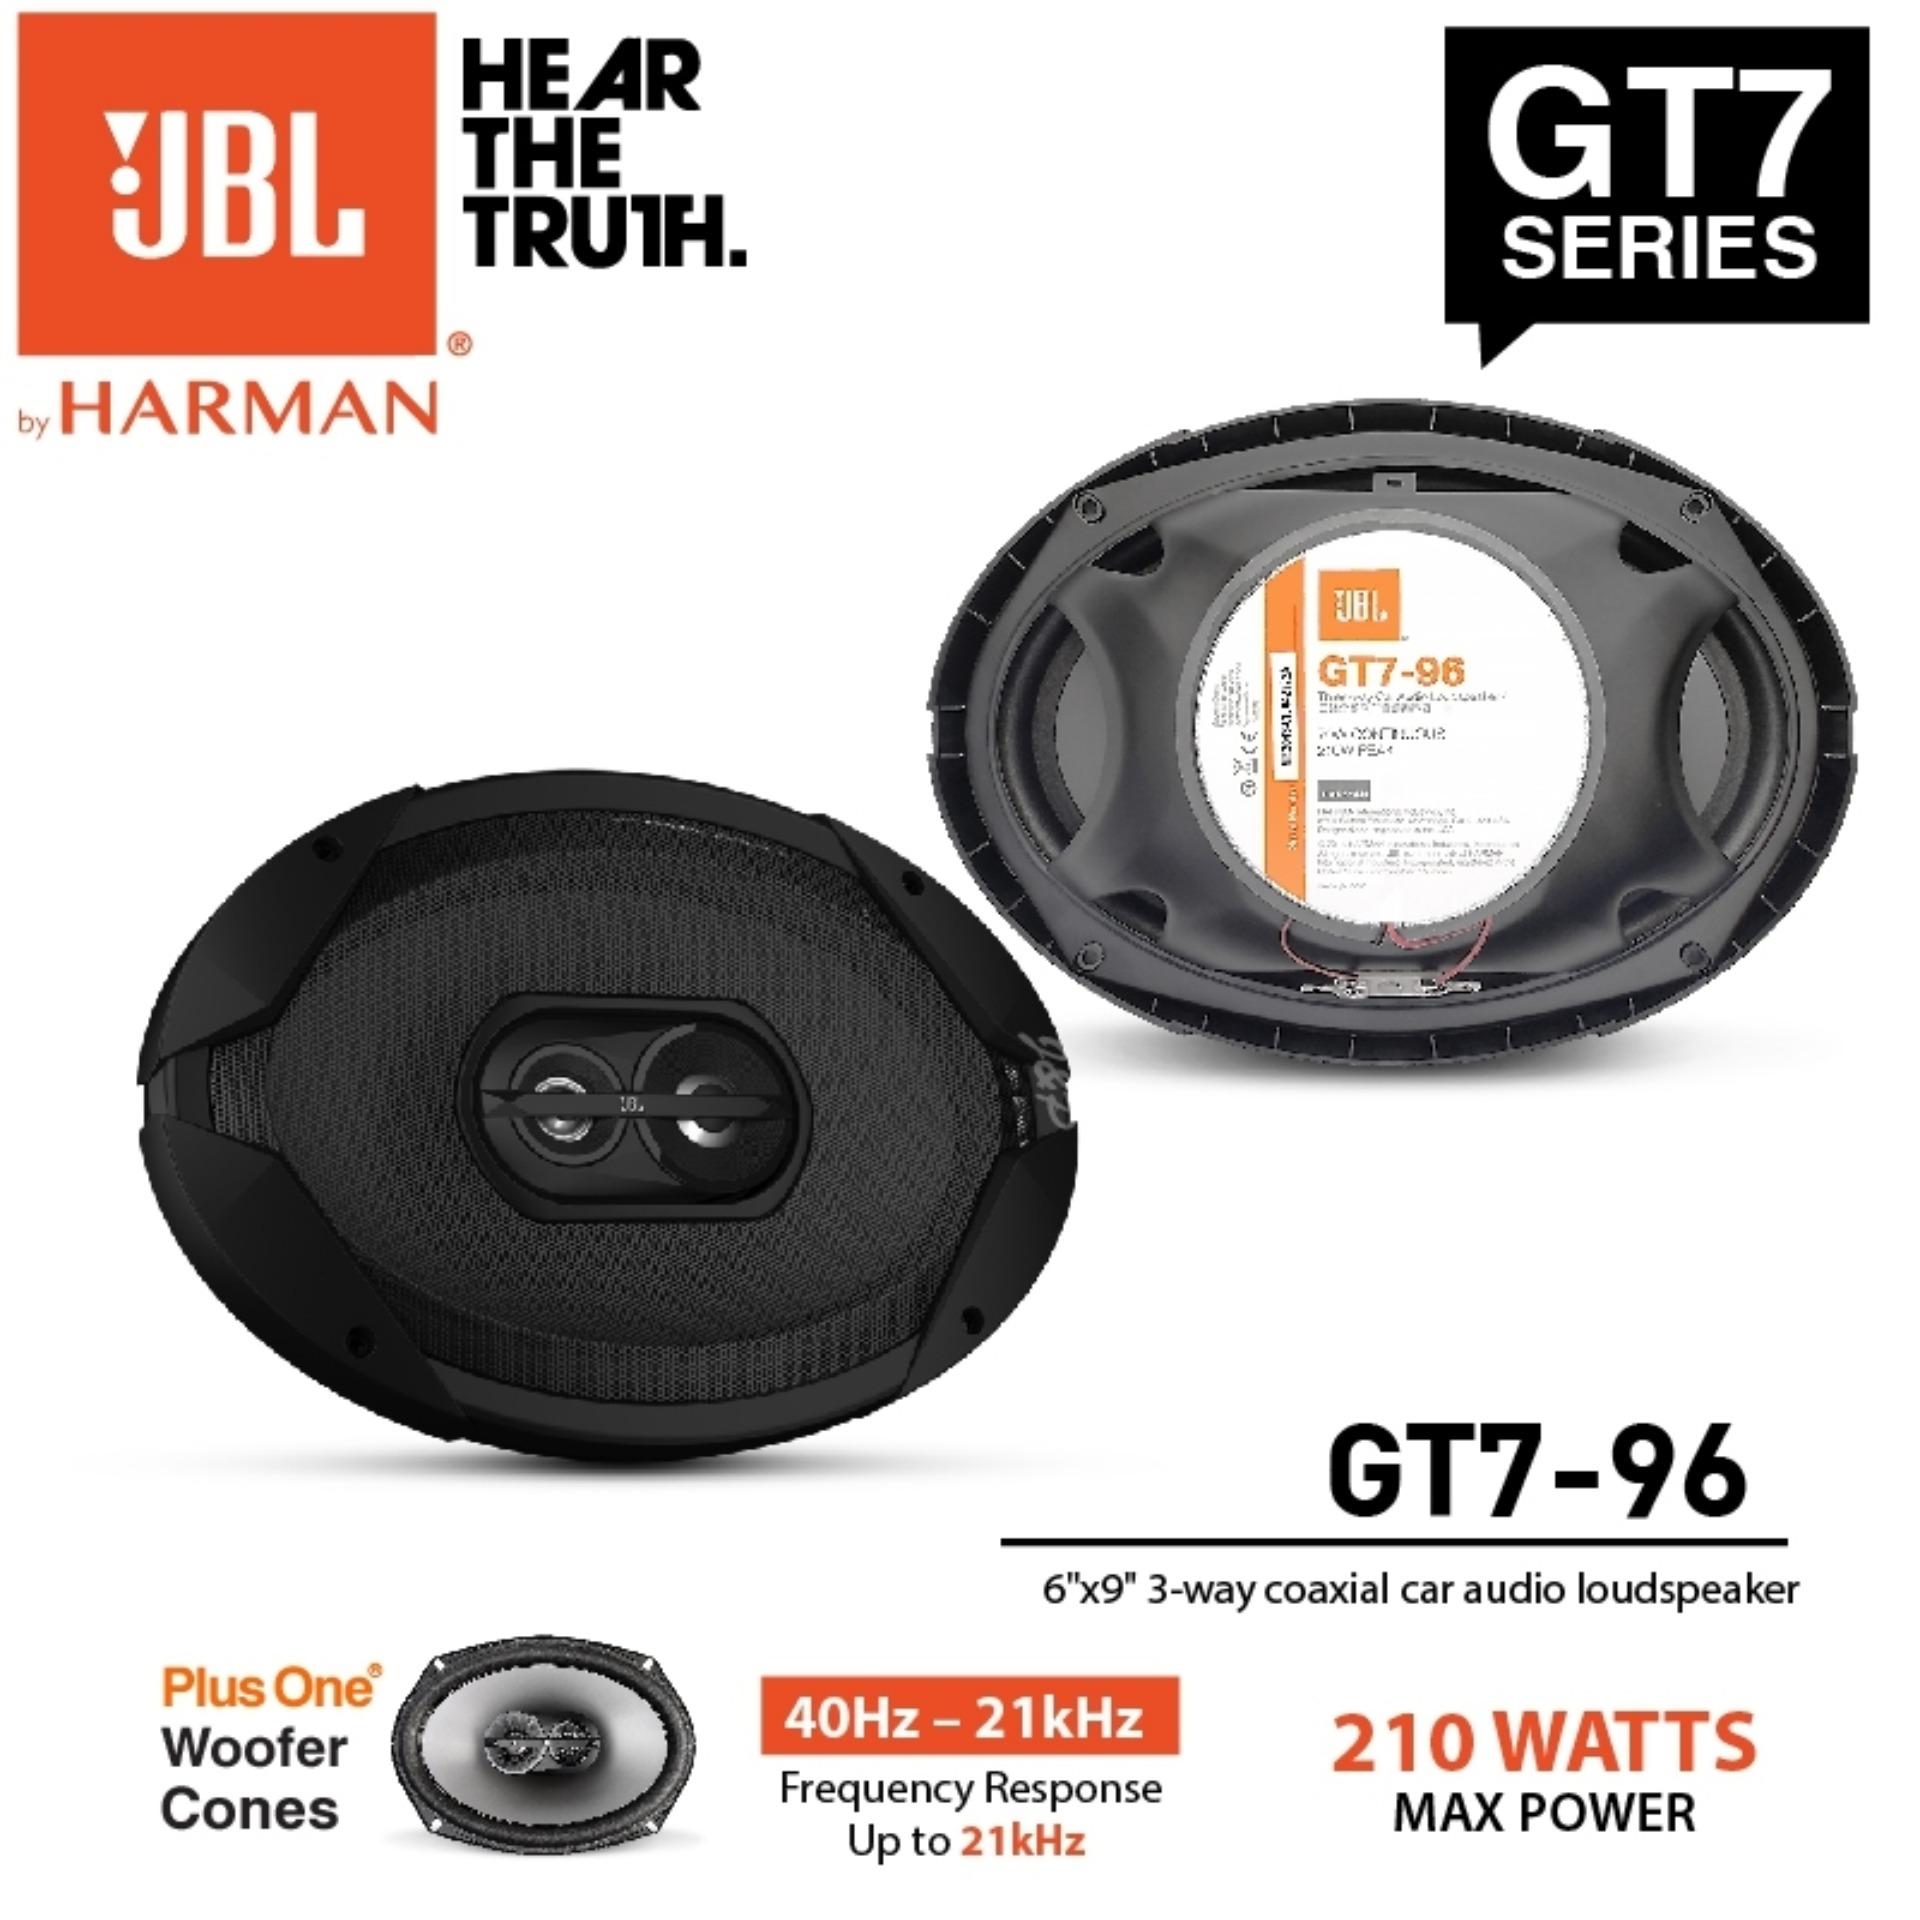 JBL GT7 SERIES GT7-96 ลำโพง6x9ติดรถยนต์ 1คู่ (แนะนำขณะฟังคลิปเสียง ควรใส่หูฟังเพื่อเสียงเพลงที่ชัดเจนครับ)